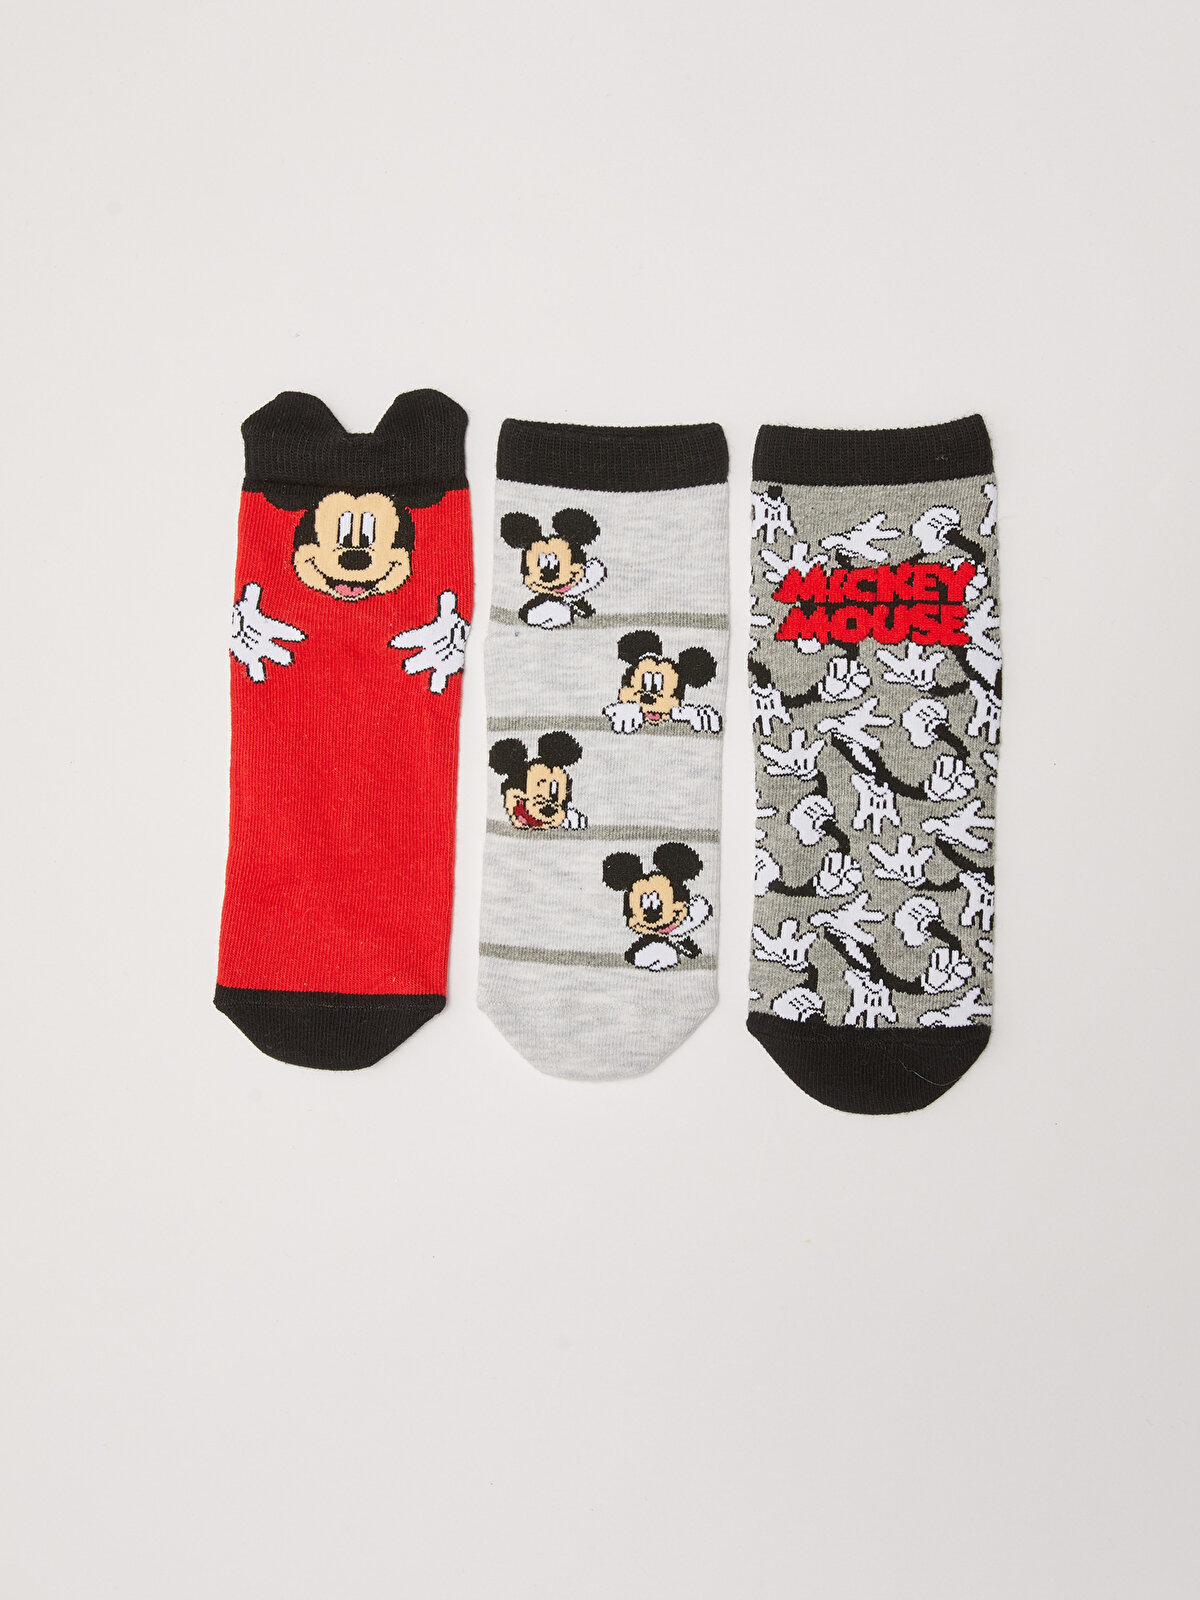 Mickey Mouse Patterned Boys Socks 3 Pack -S2AA72Z4-K00 